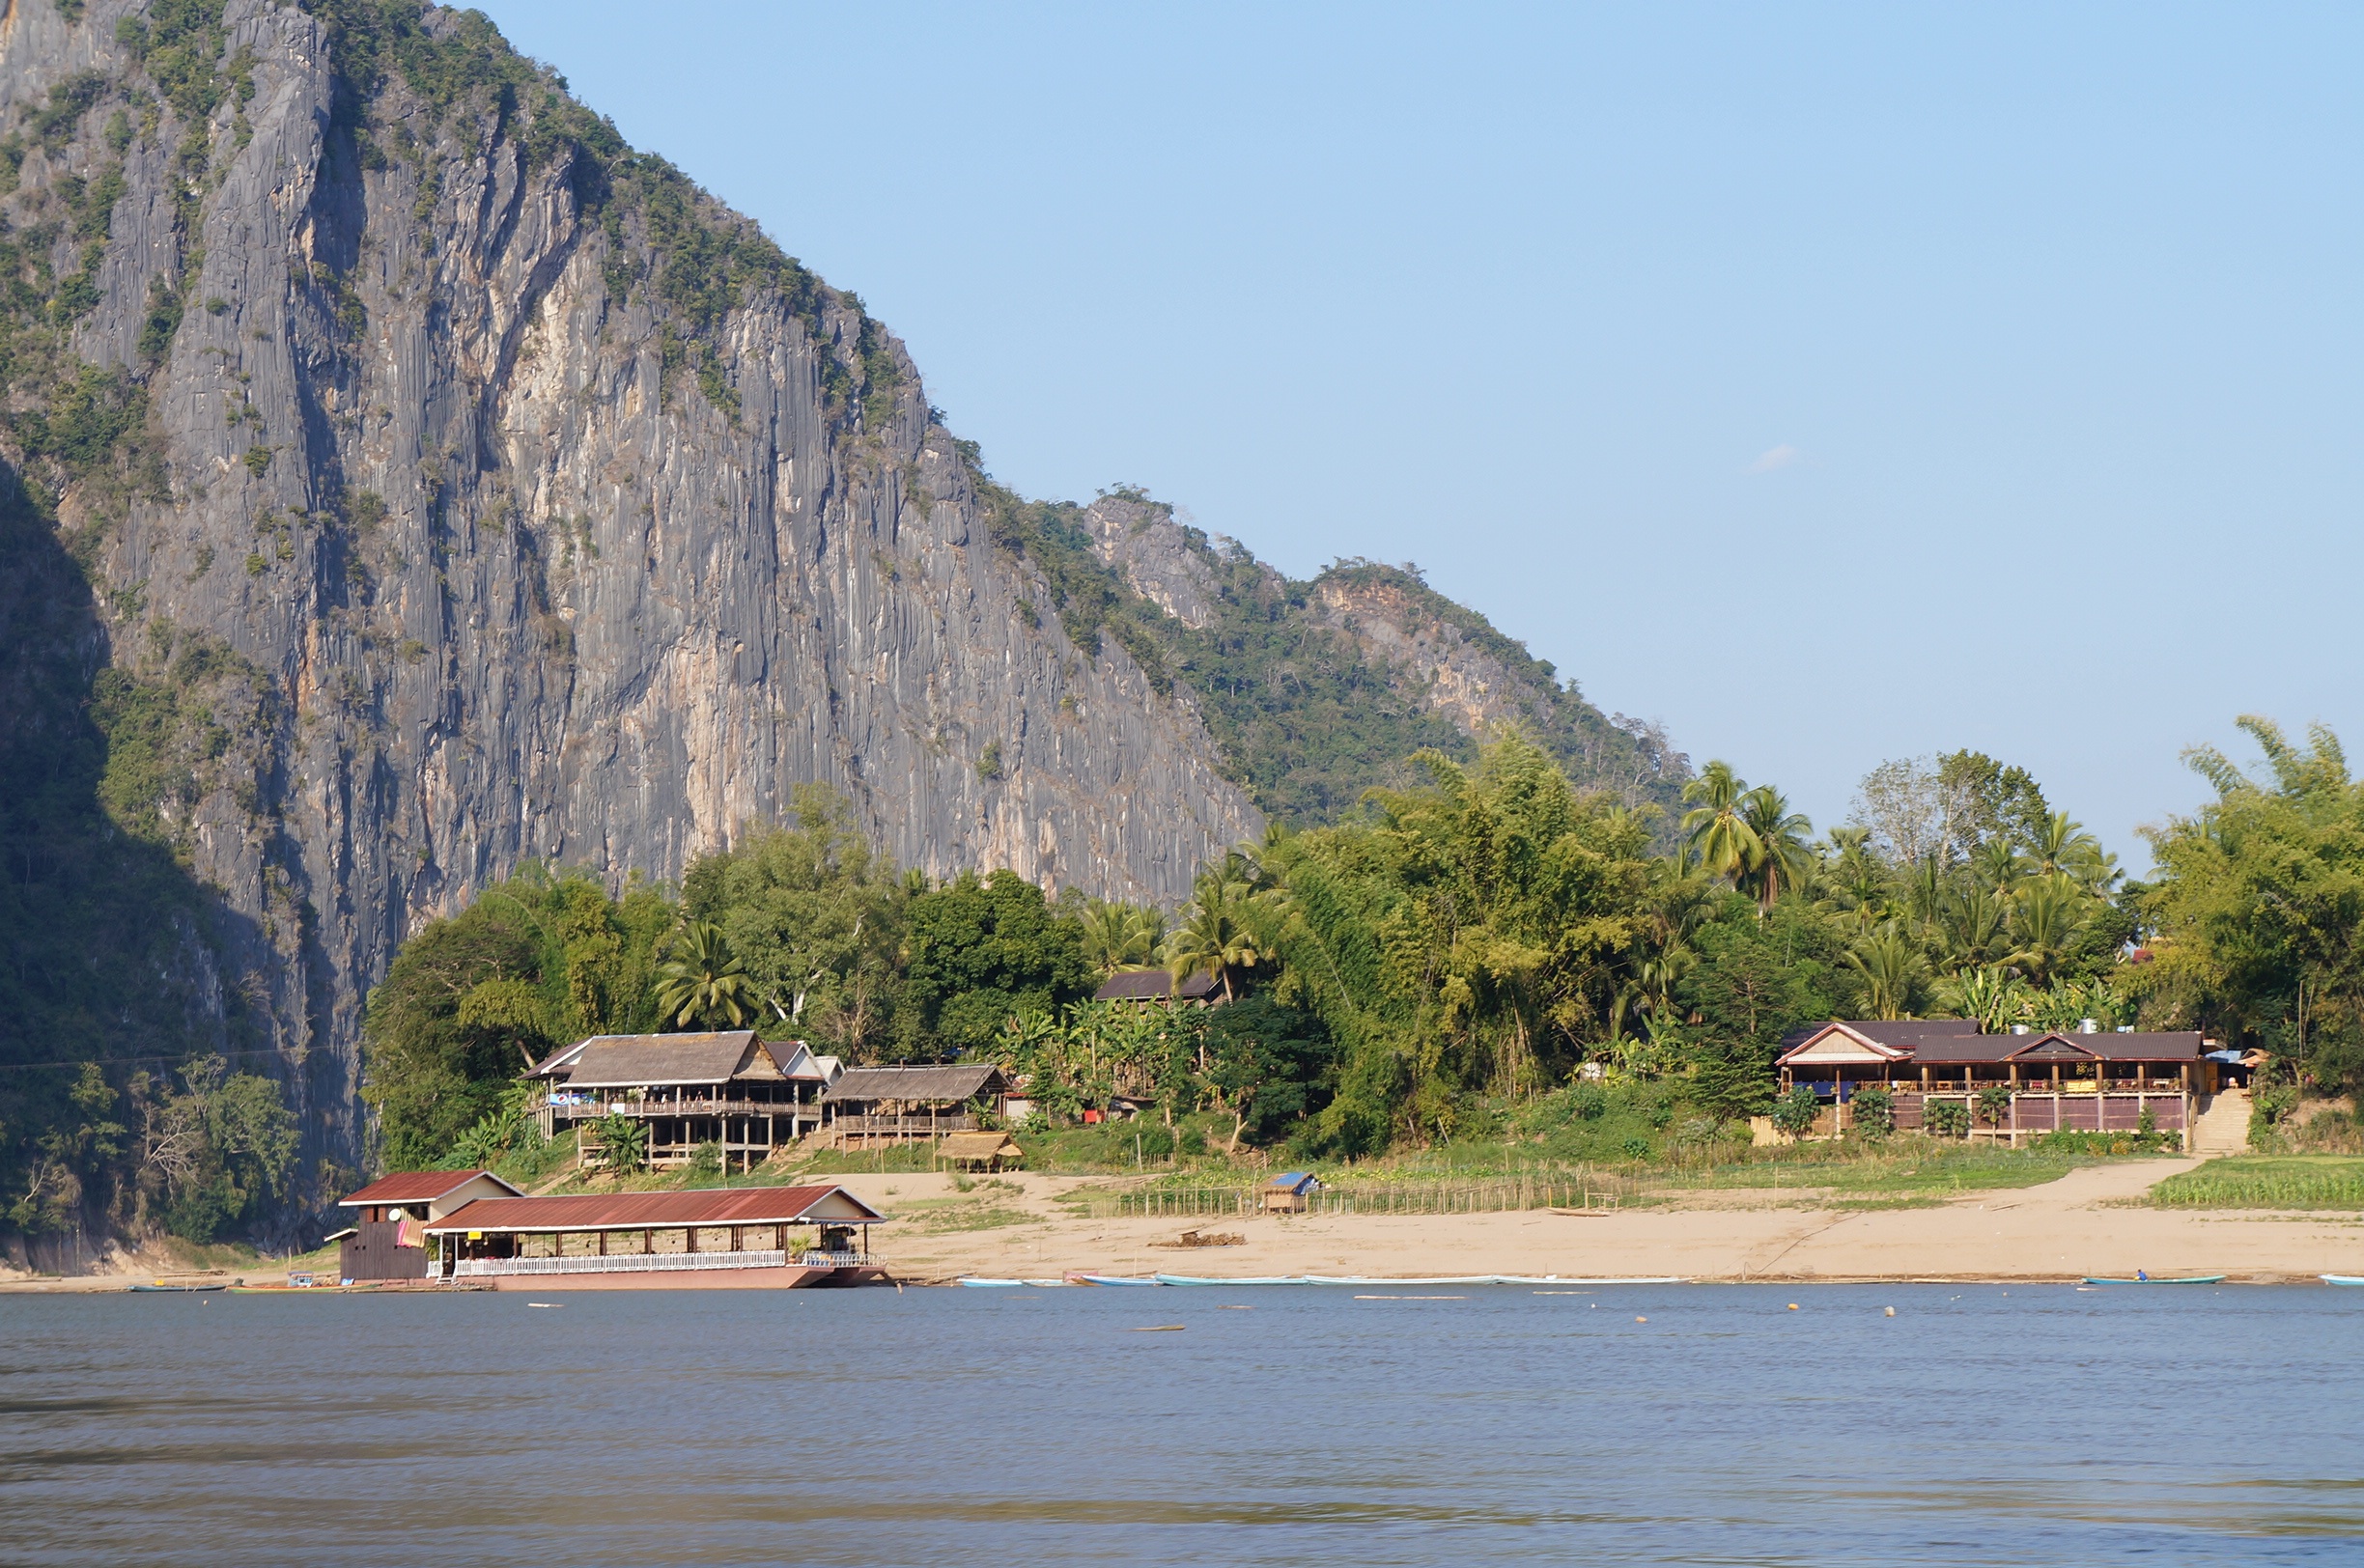 Linda viagem pelo Mekong